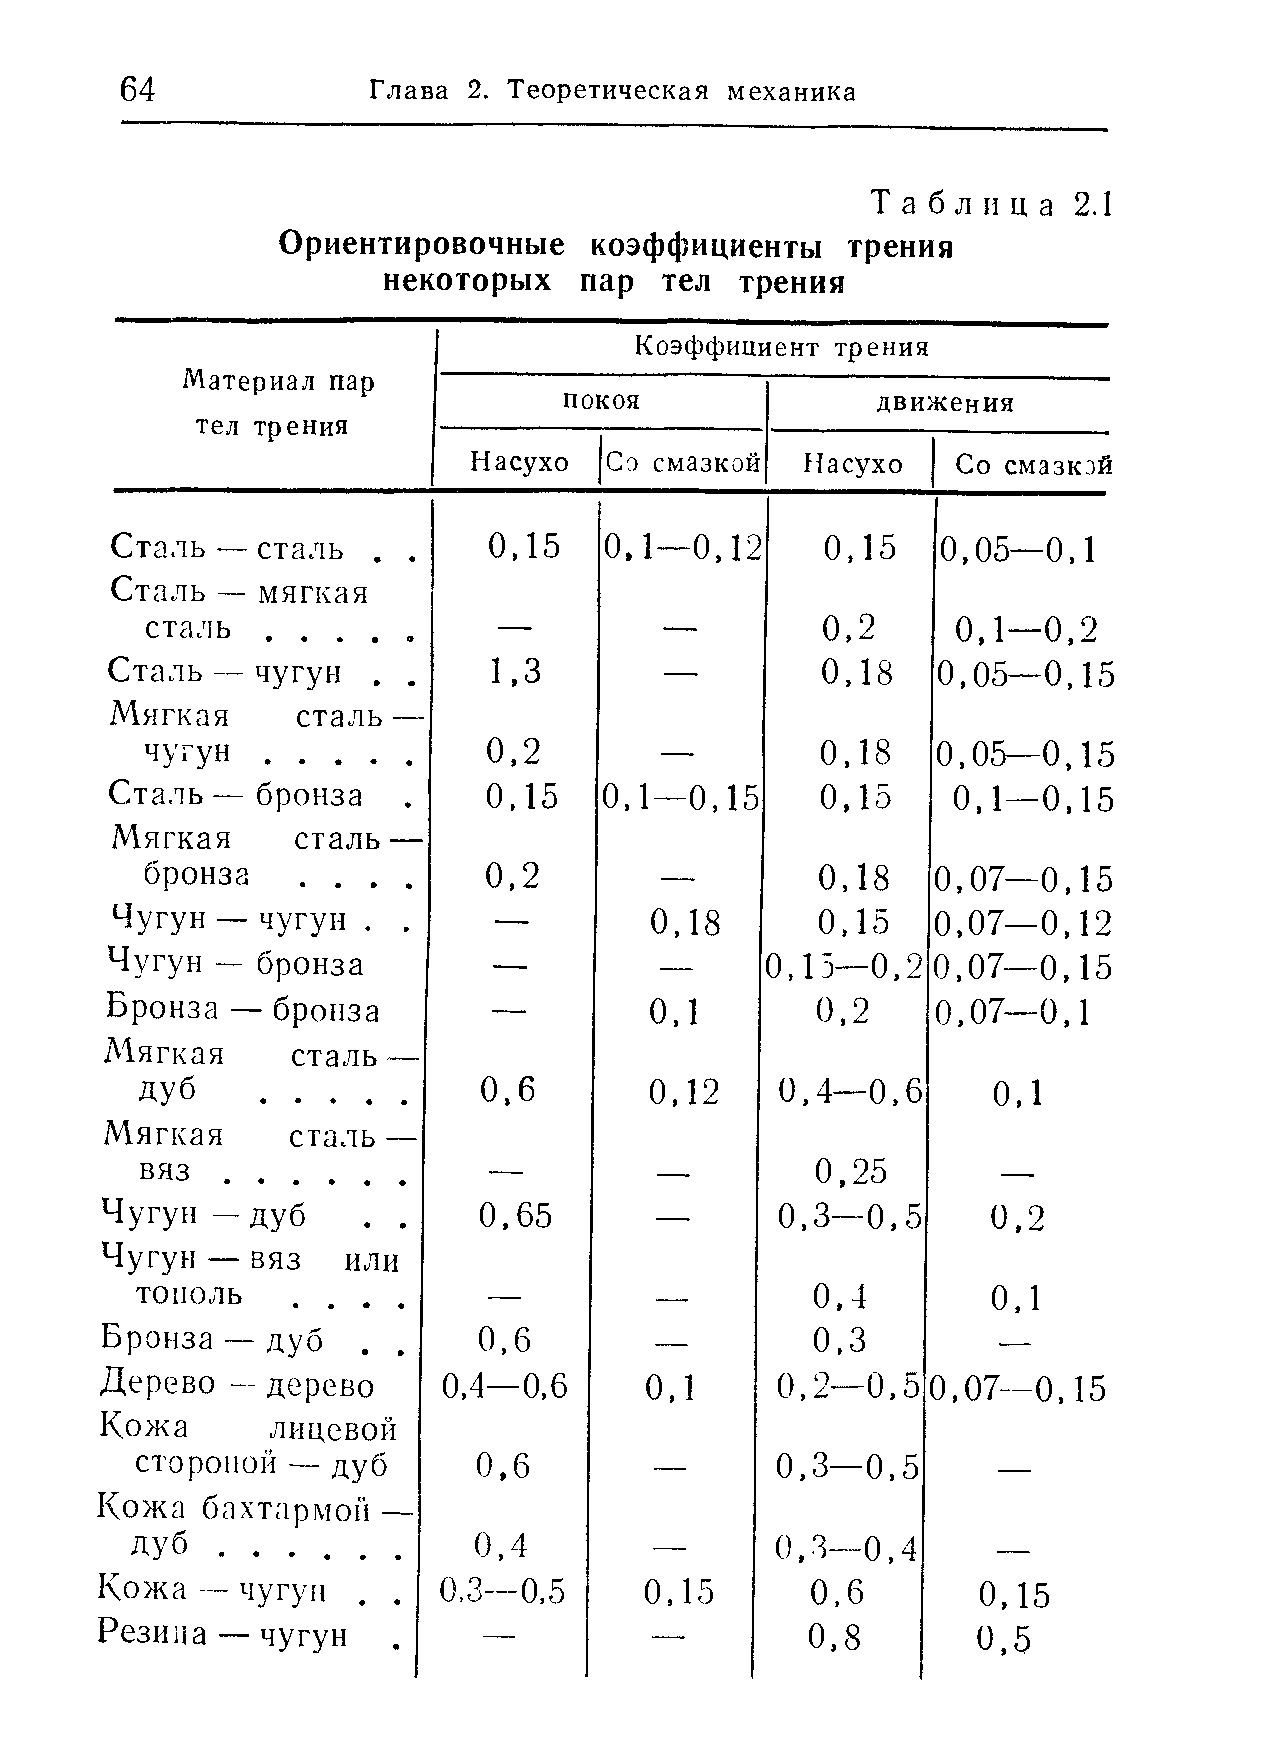 Таблица 2.1 Ориентировочные коэффициенты трения некоторых пар тел трения
